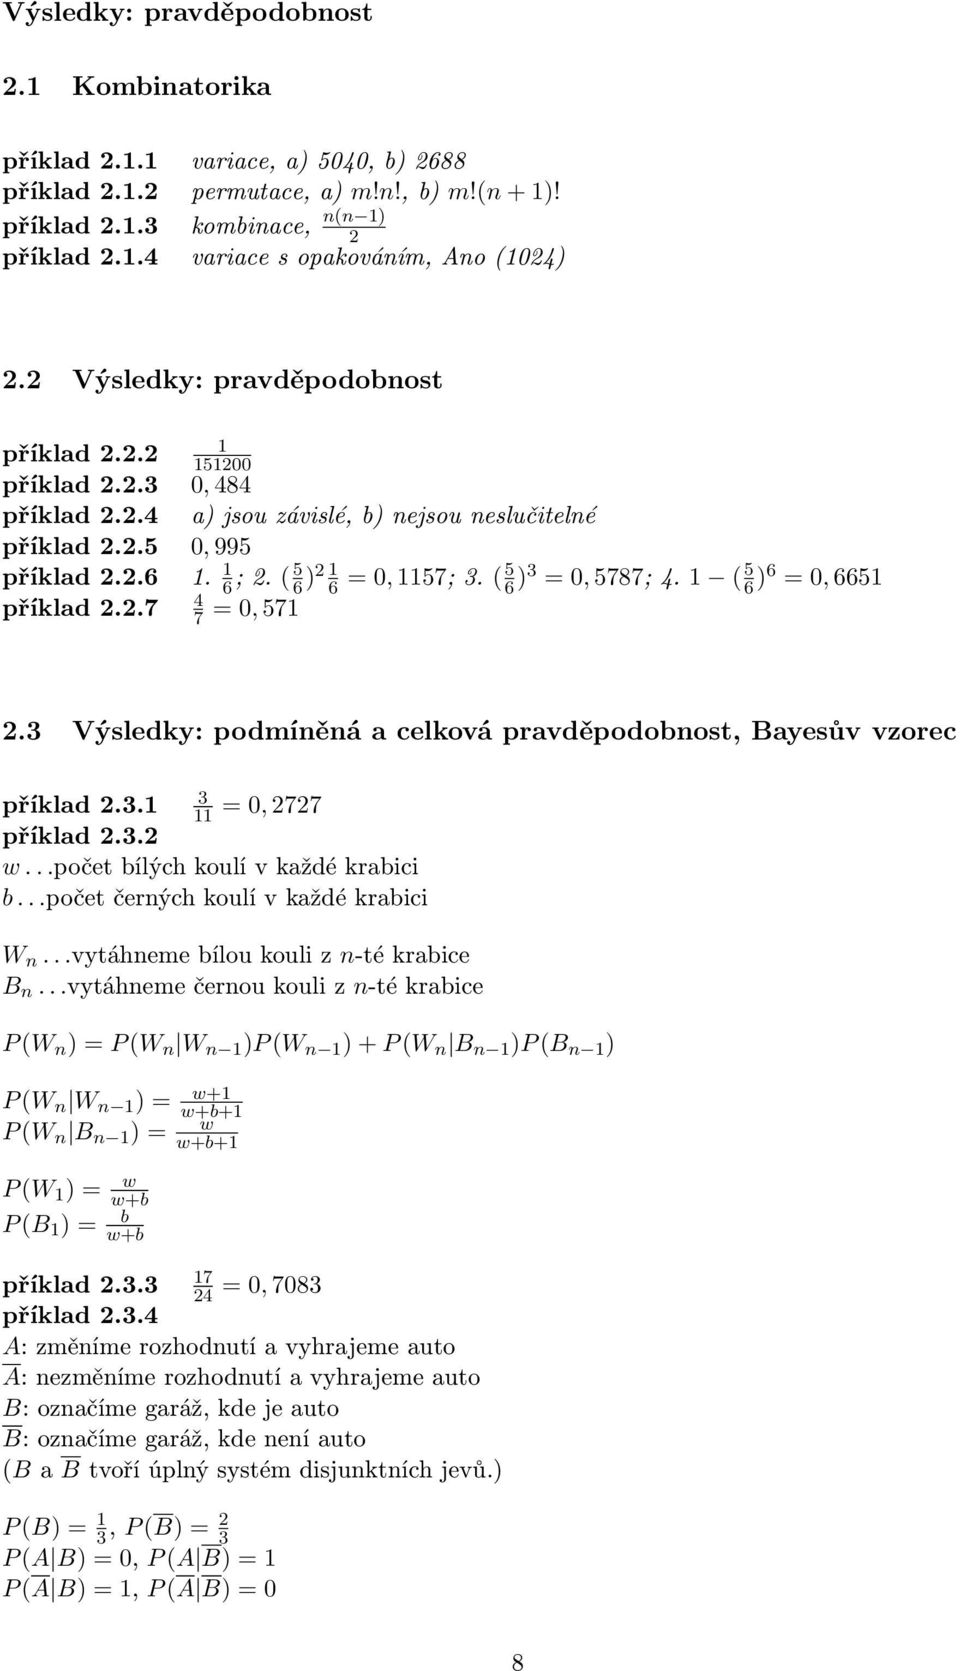 ( 5 6 )2 1 6 = 0, 1157; 3. ( 5 6 )3 = 0, 5787; 4. 1 ( 5 6 )6 = 0, 6651 4 7 = 0, 571 2.3 Výsledky: podmíněná a celková pravděpodobnost, Bayesův vzorec 3 příklad 2.3.1 11 = 0, 2727 příklad 2.3.2 w.